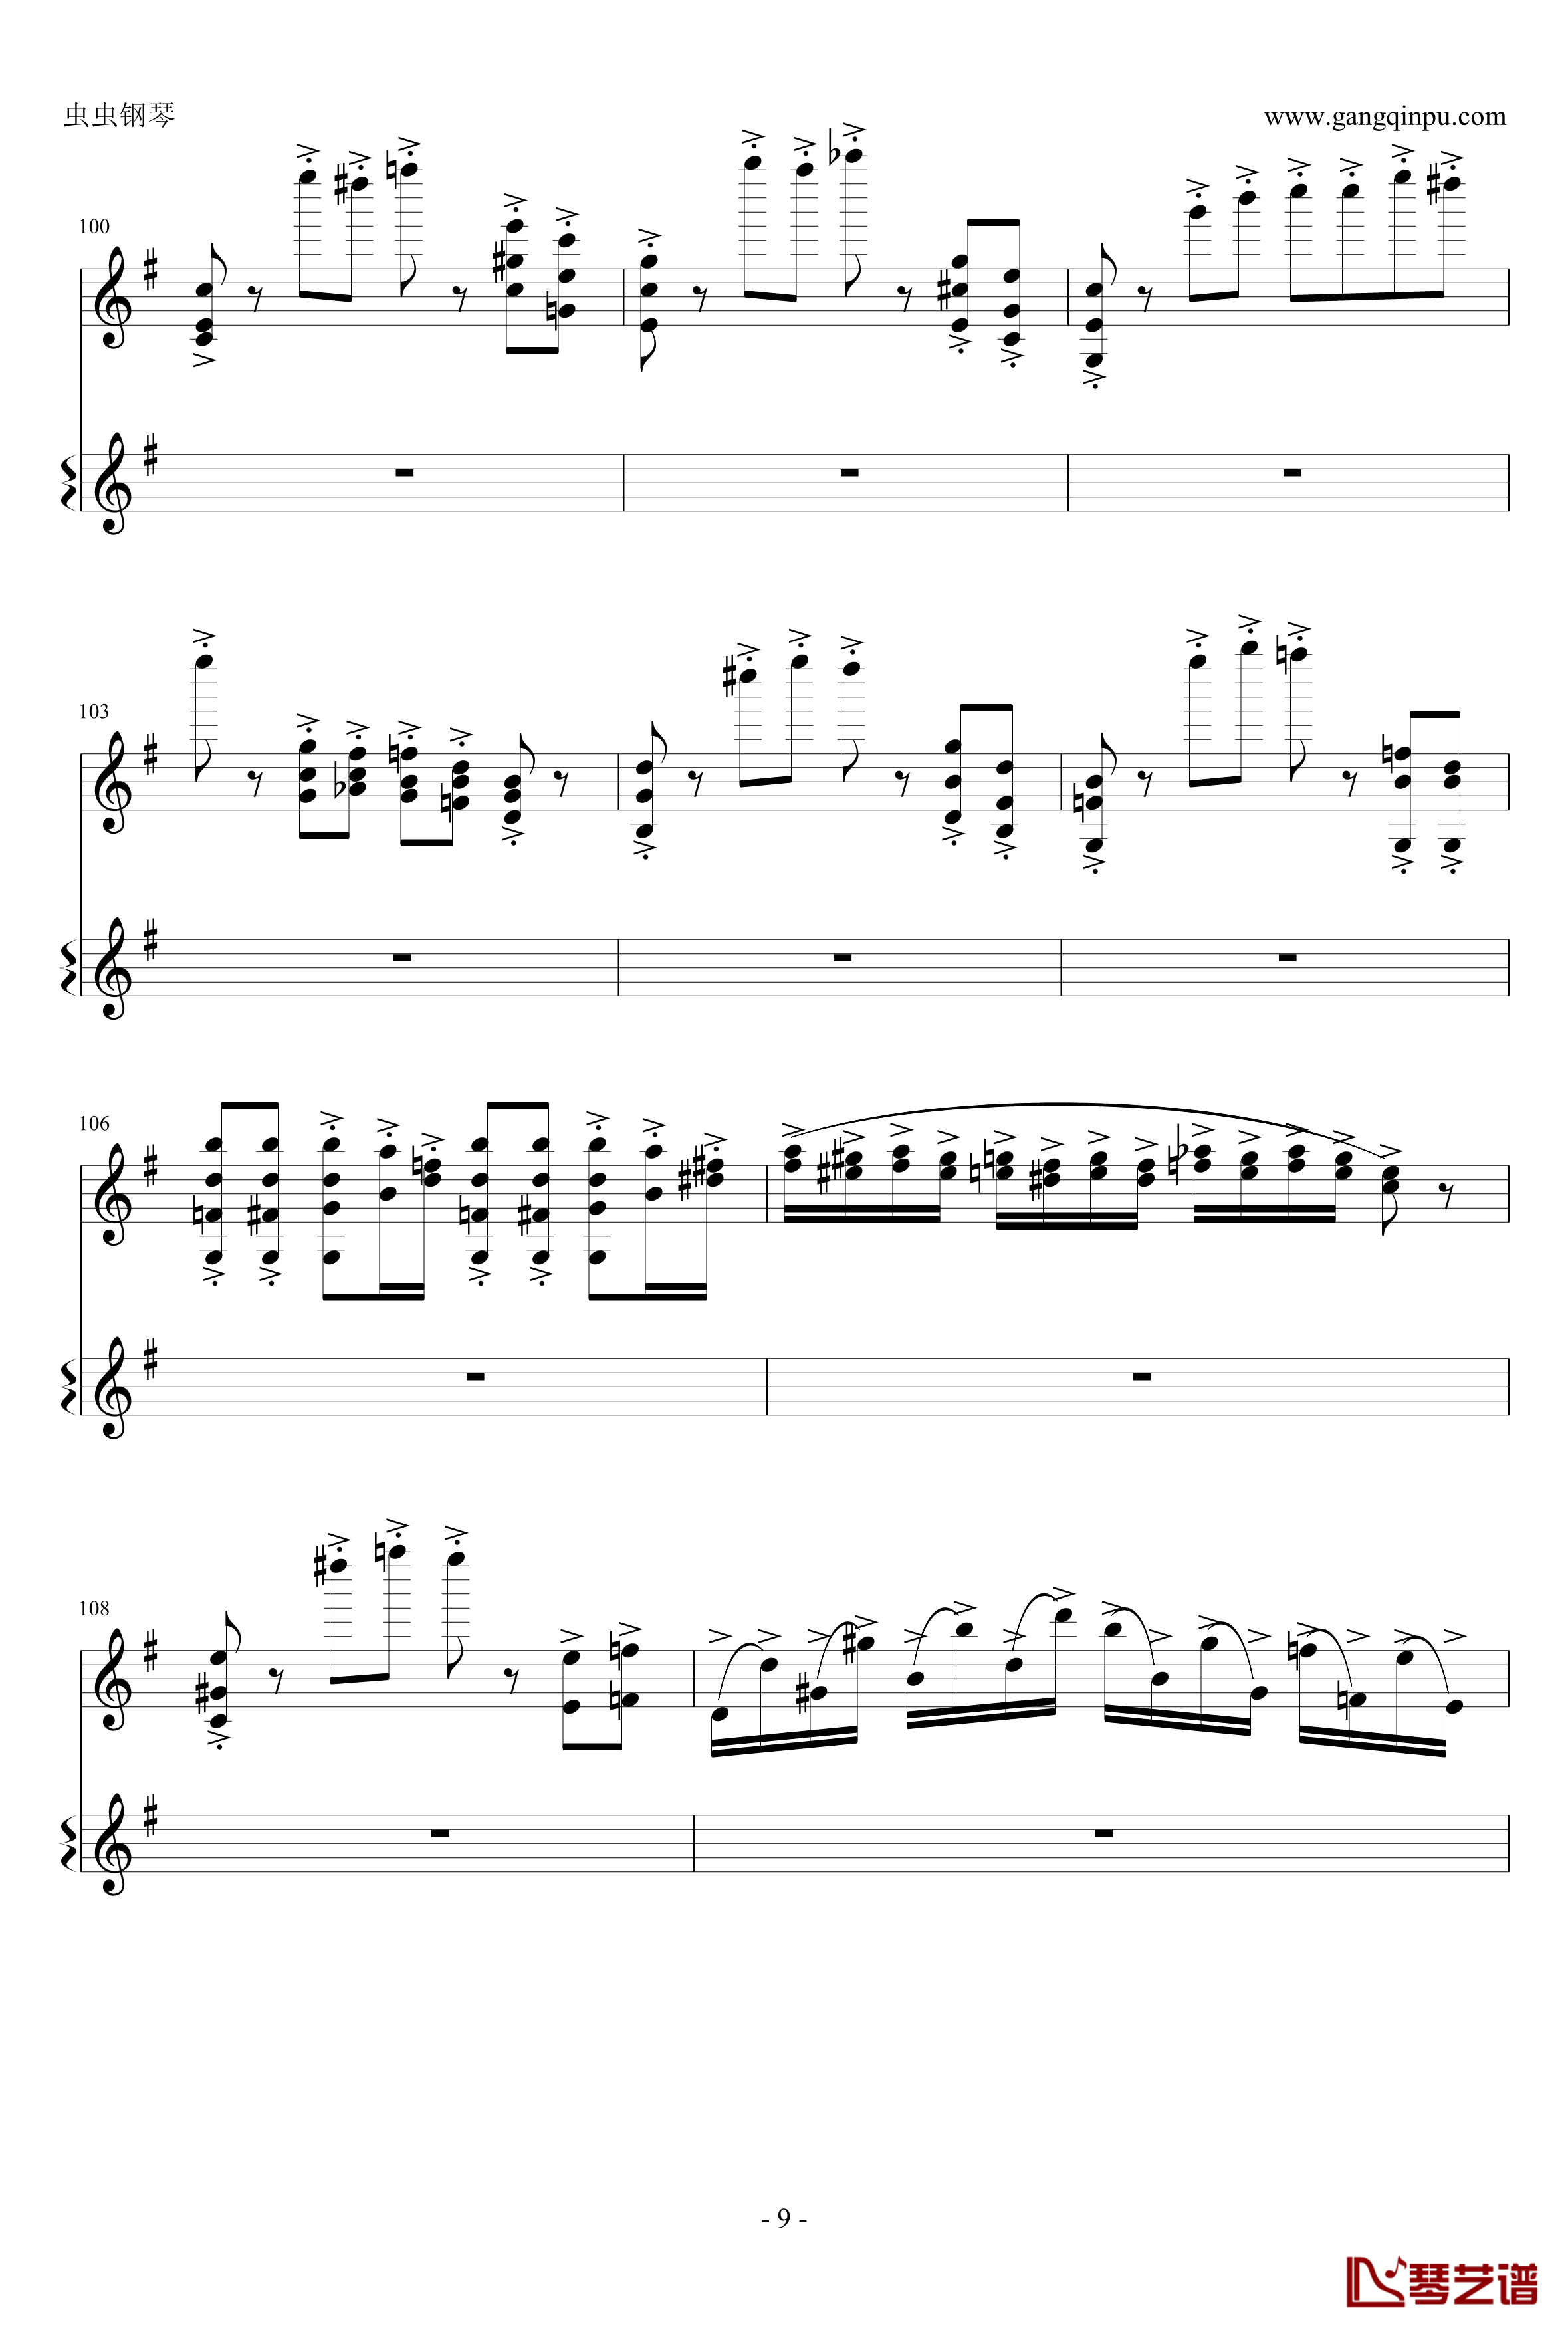 意大利国歌钢琴谱-变奏曲修改版-DXF9